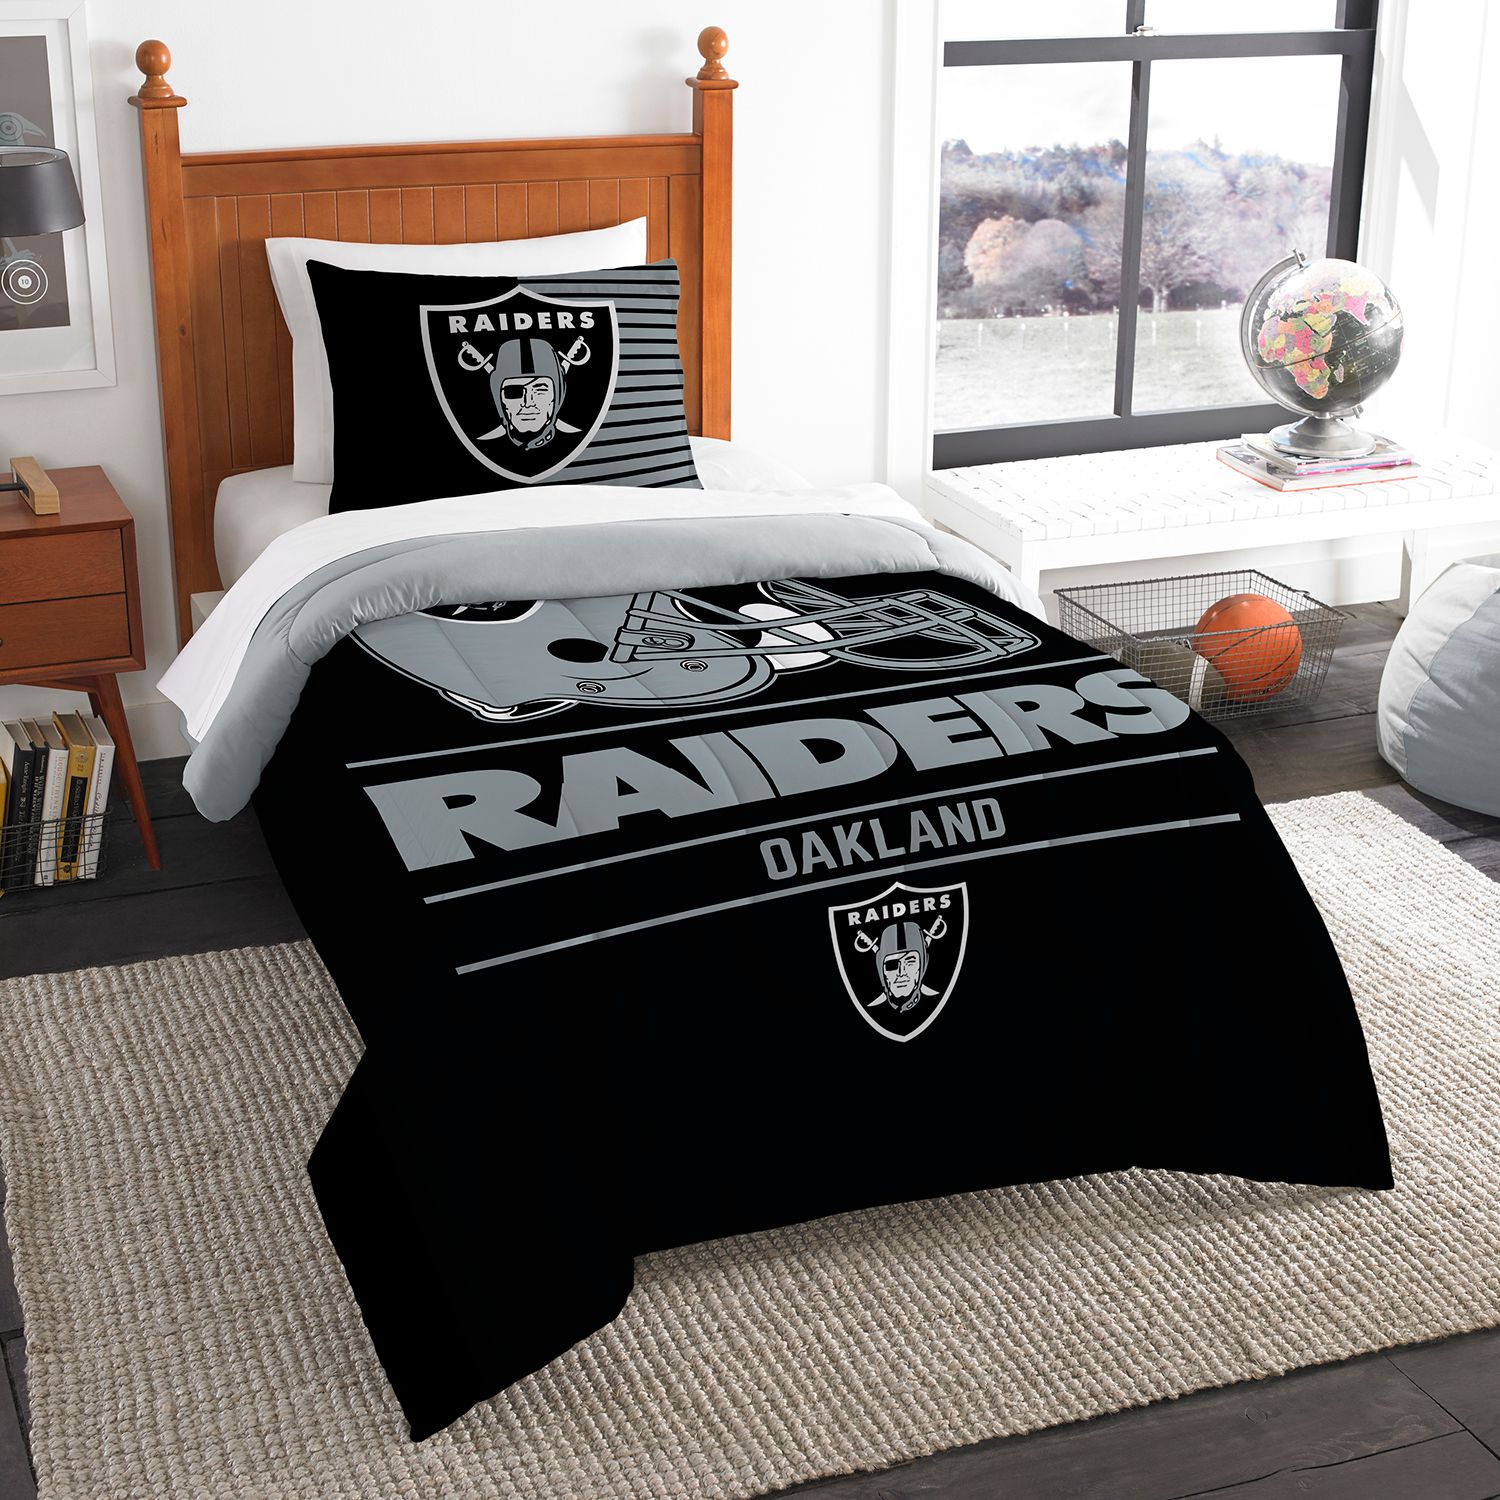 raiders crib bedding set